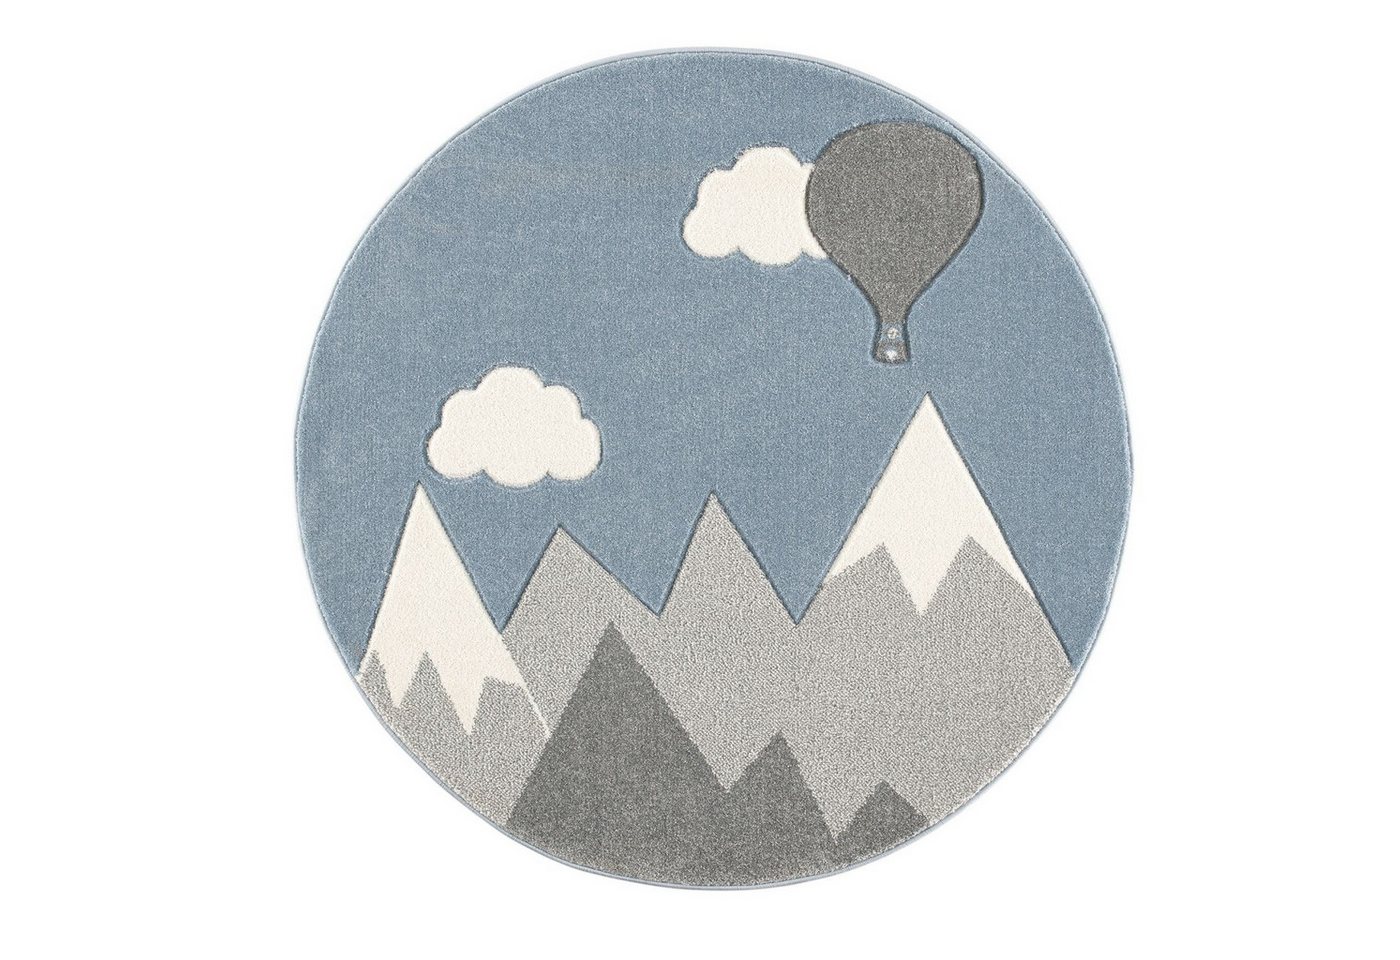 Kinderteppich Spielteppich, Berge u. Ballon silbergrau/weiß, rund, Ø 133 cm, Scandicliving, rund von Scandicliving